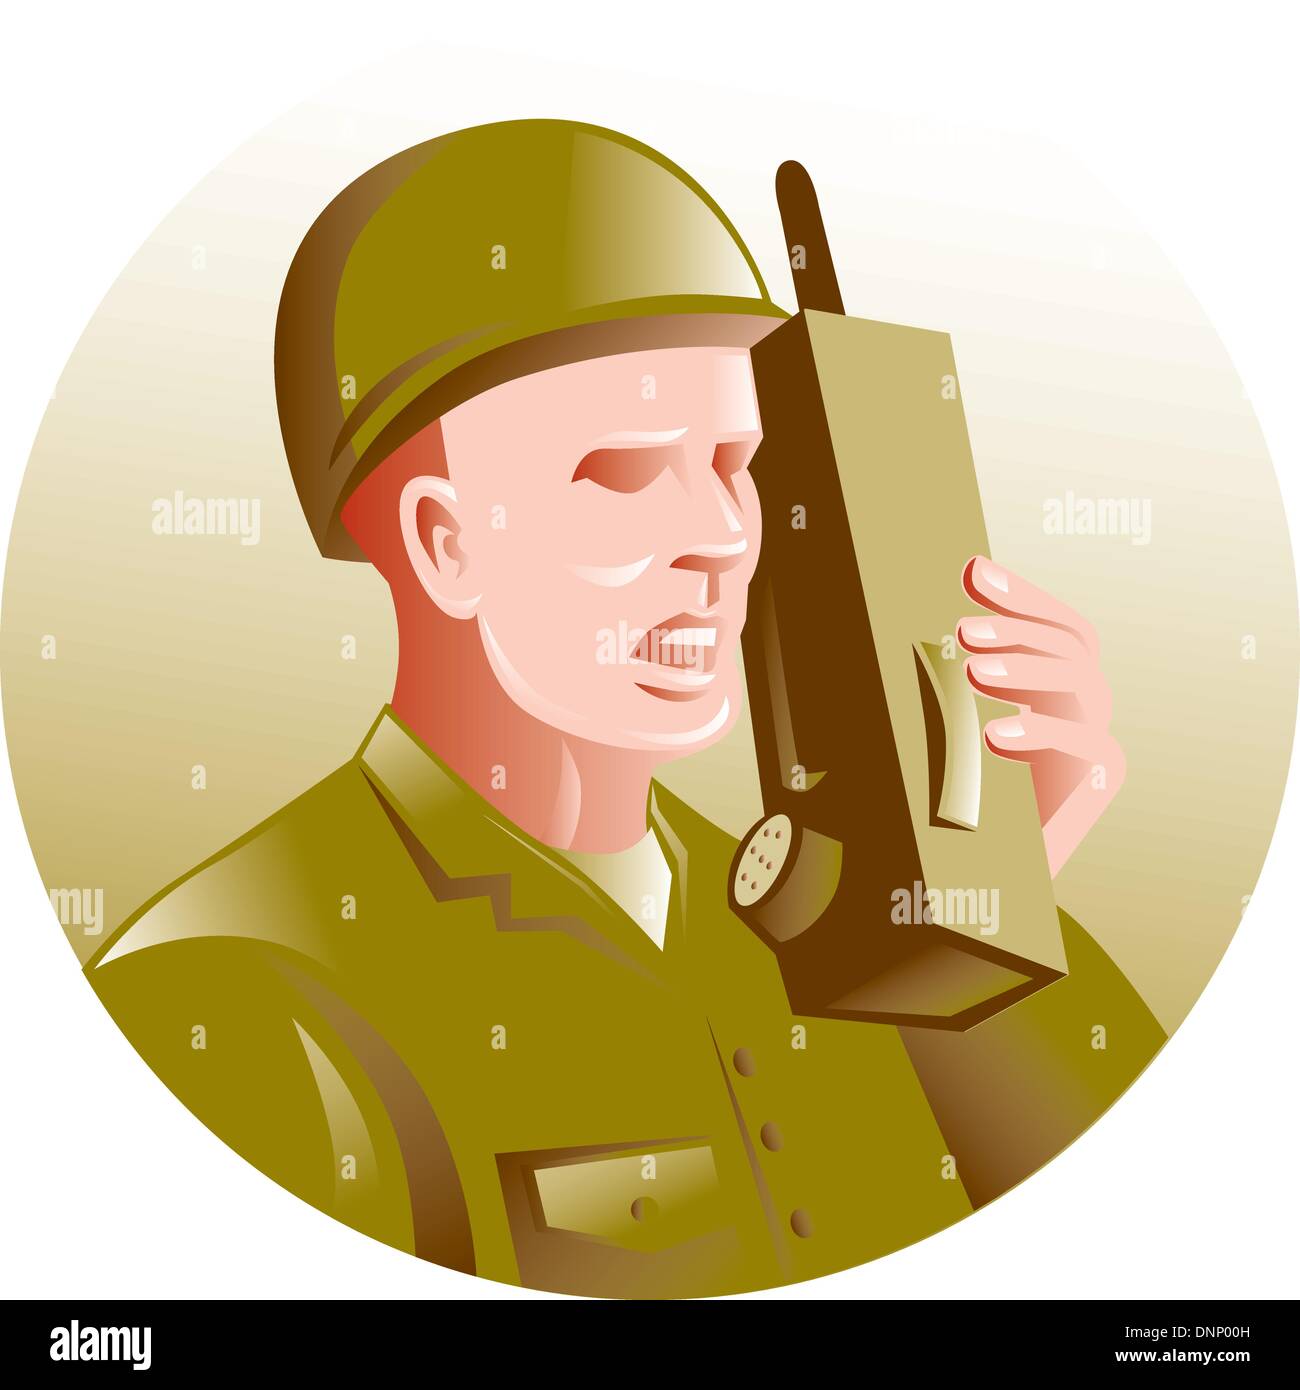 Abbildung eines militärischen Soldaten sprechen über Radio Walkie-talkie im inneren Kreis im retro-Stil gemacht. Stock Vektor